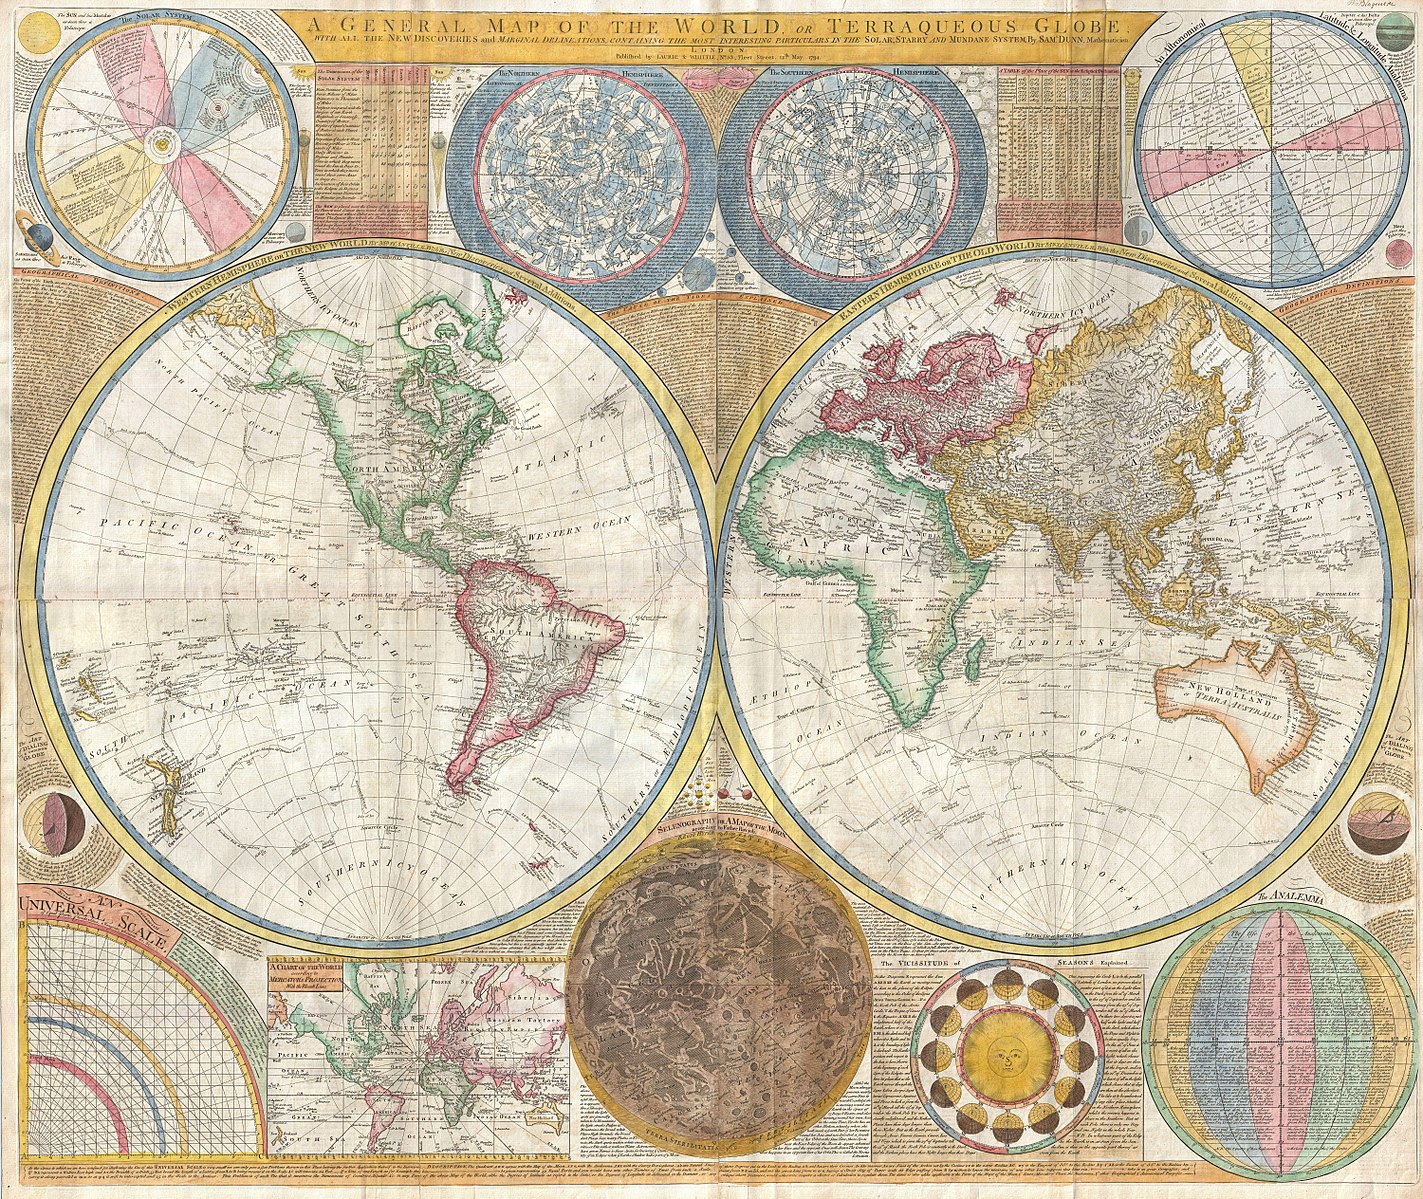 Mapa del mundo en 1794 según European Navigators